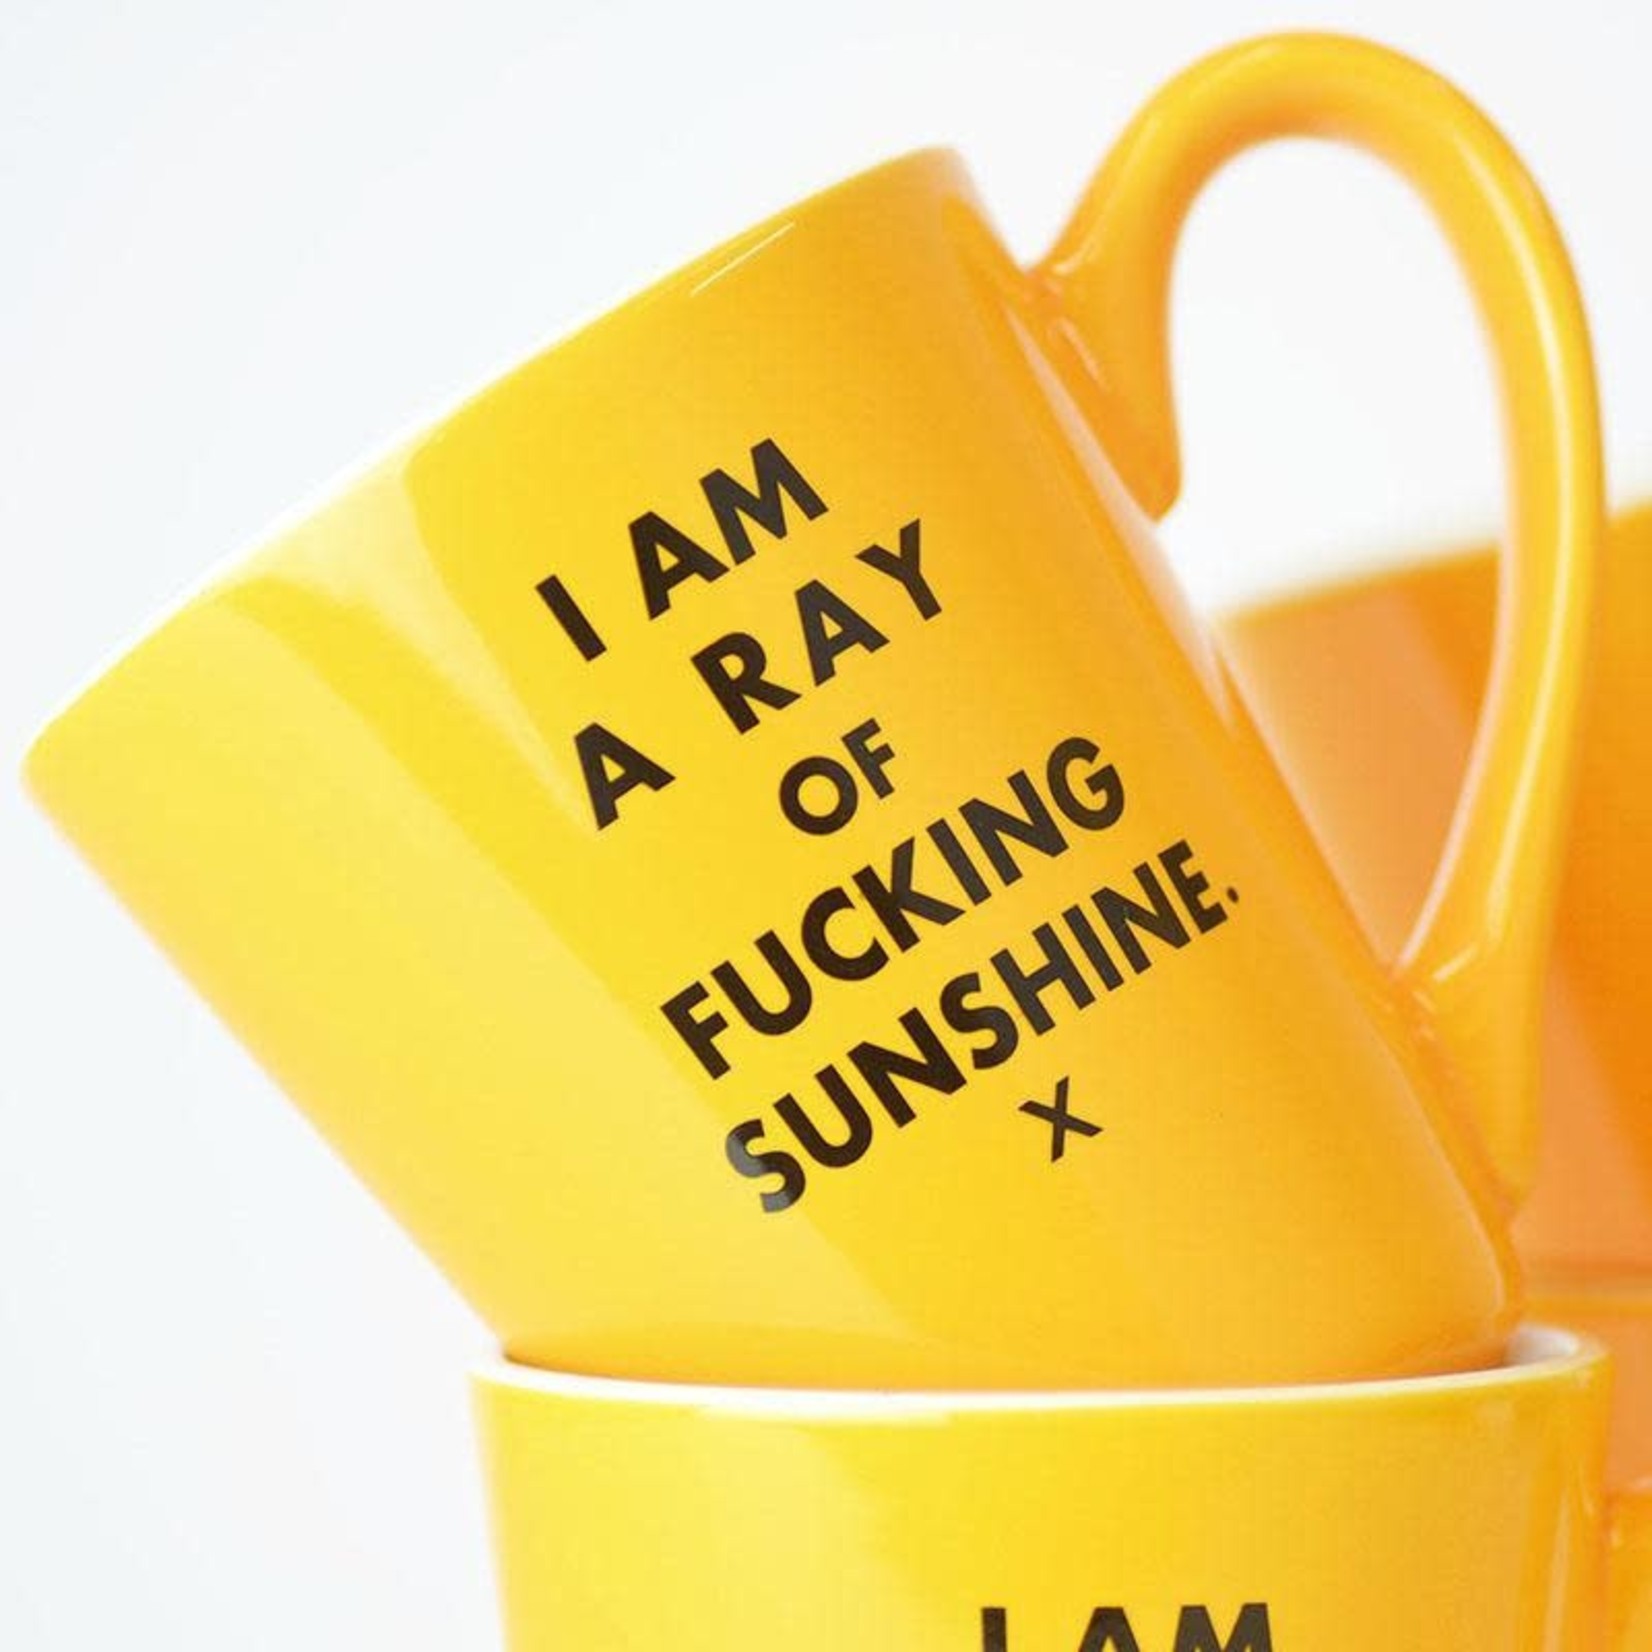 Meriwether I am a ray of fucking sunshine. Ceramic Coffee Mug.